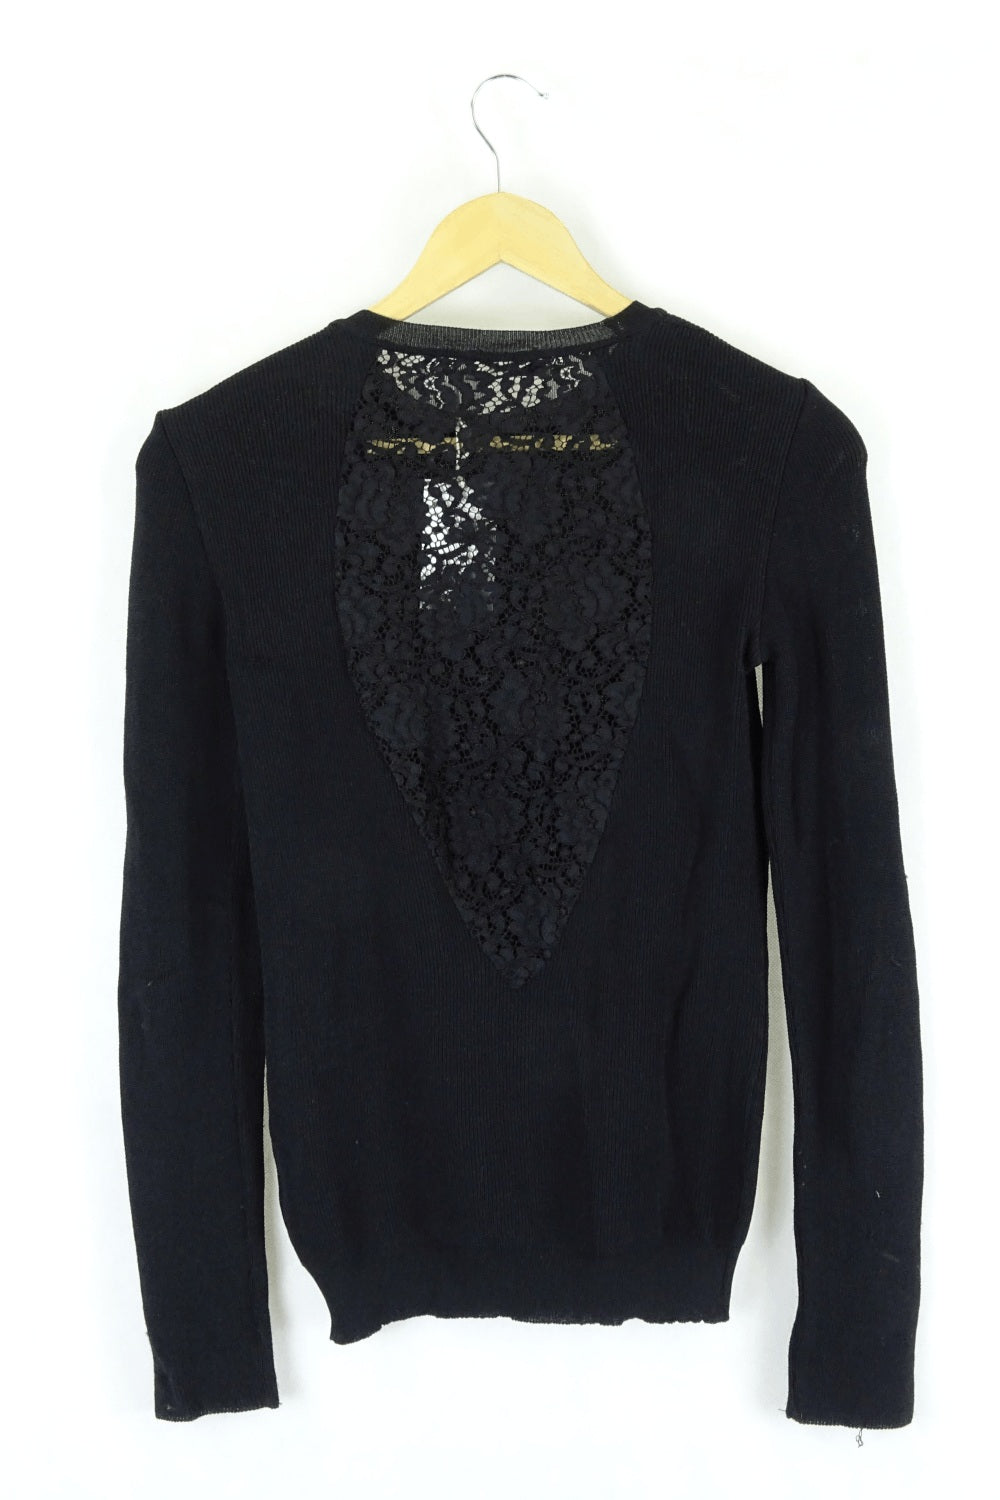 Zara Black Knit Top S